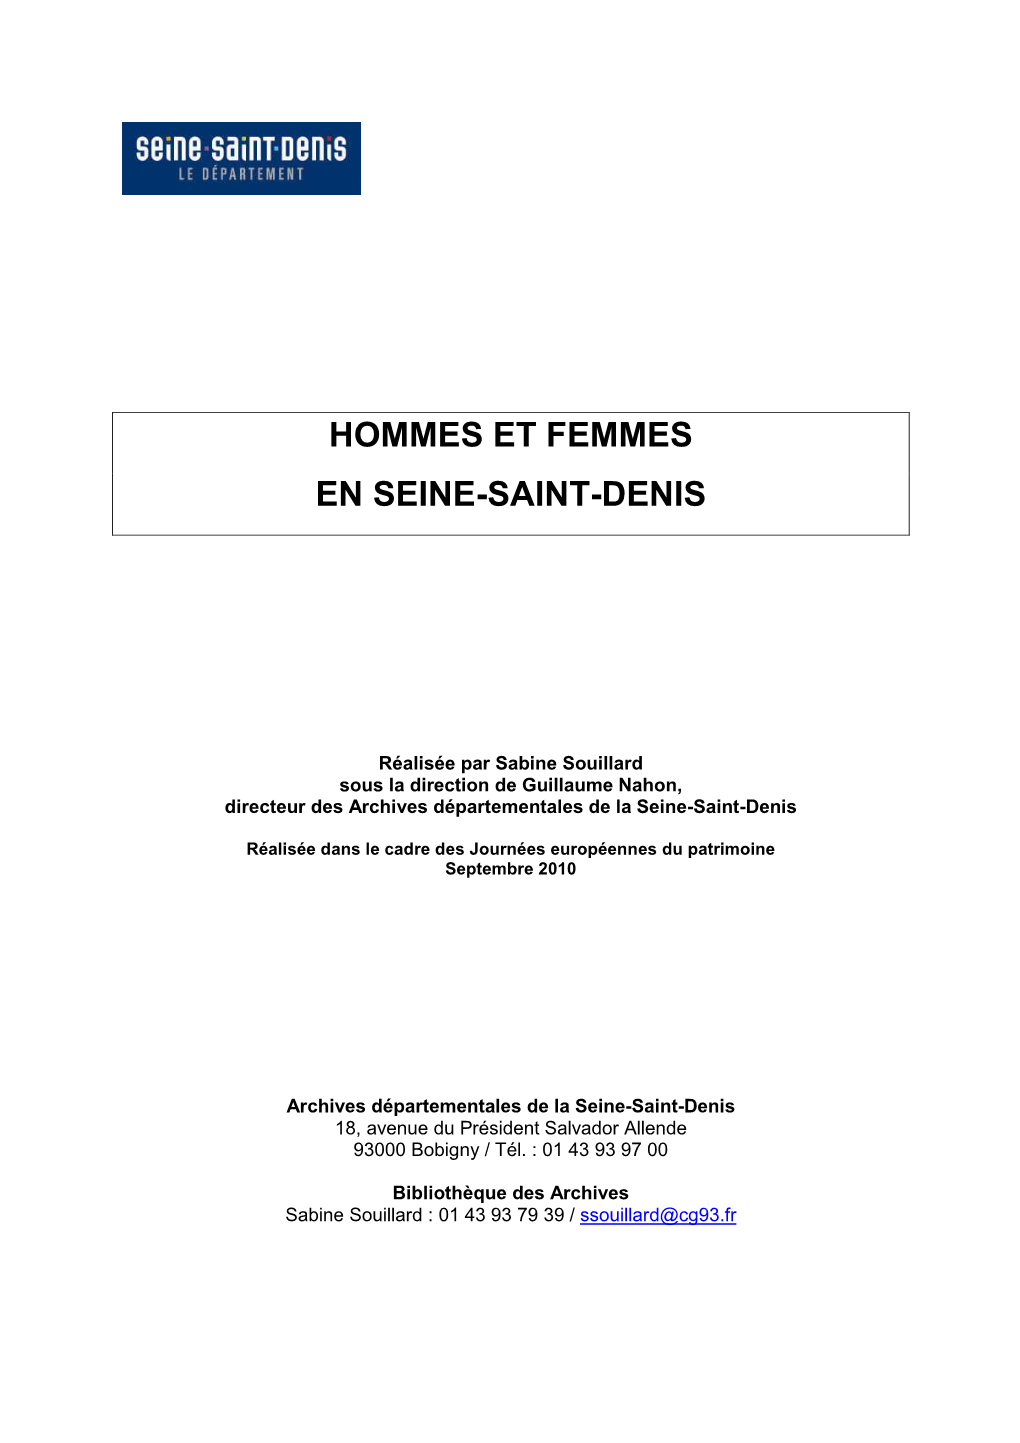 Les Hommes Et Femmes En Seine-Saint-Denis